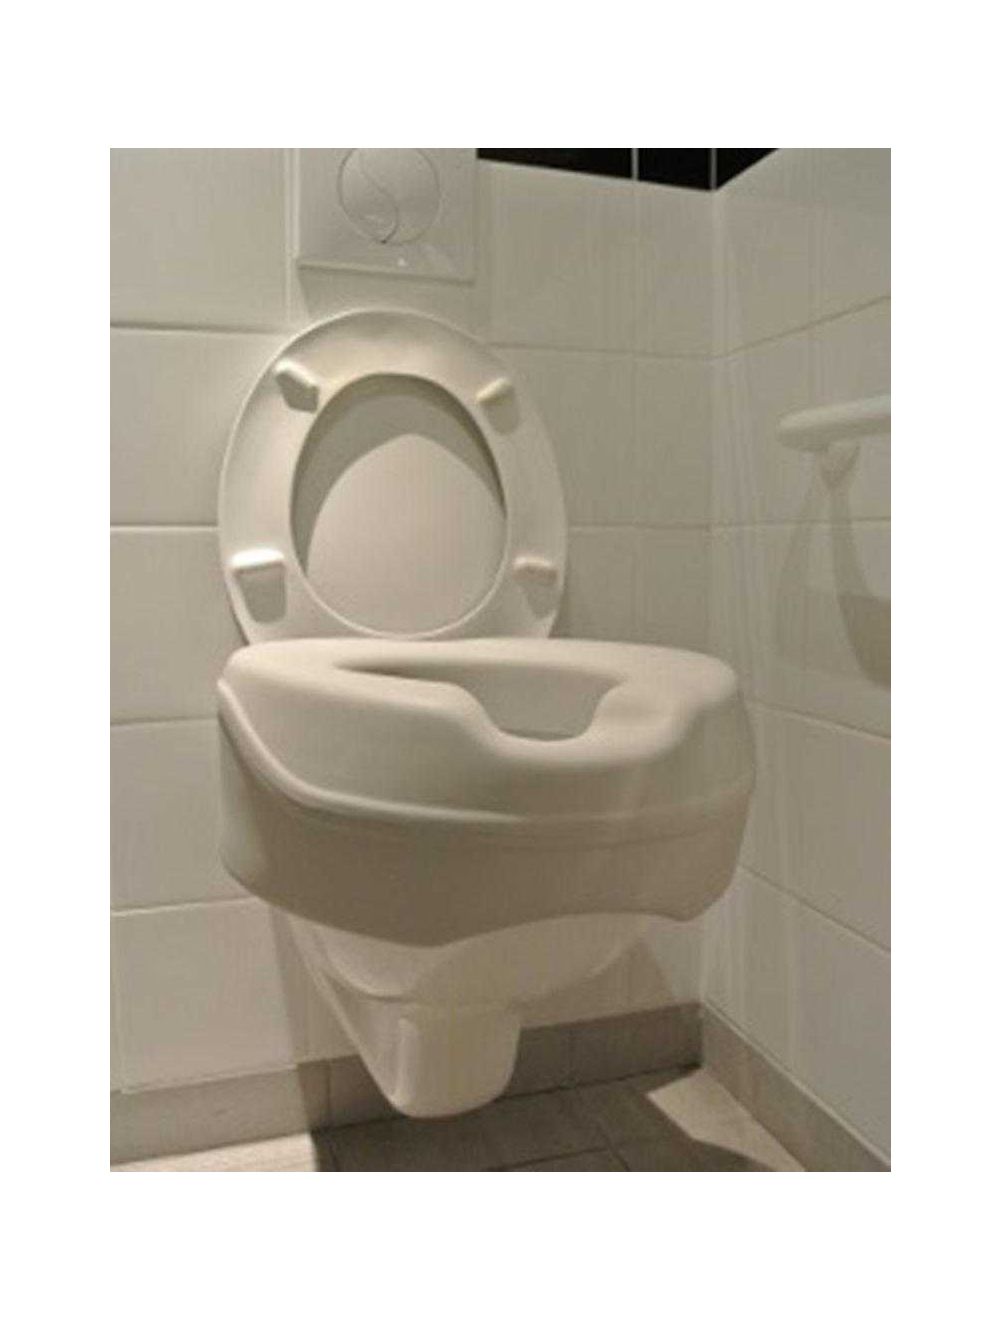 Bains de siège pour toilettes - Bassin de bain portable pour